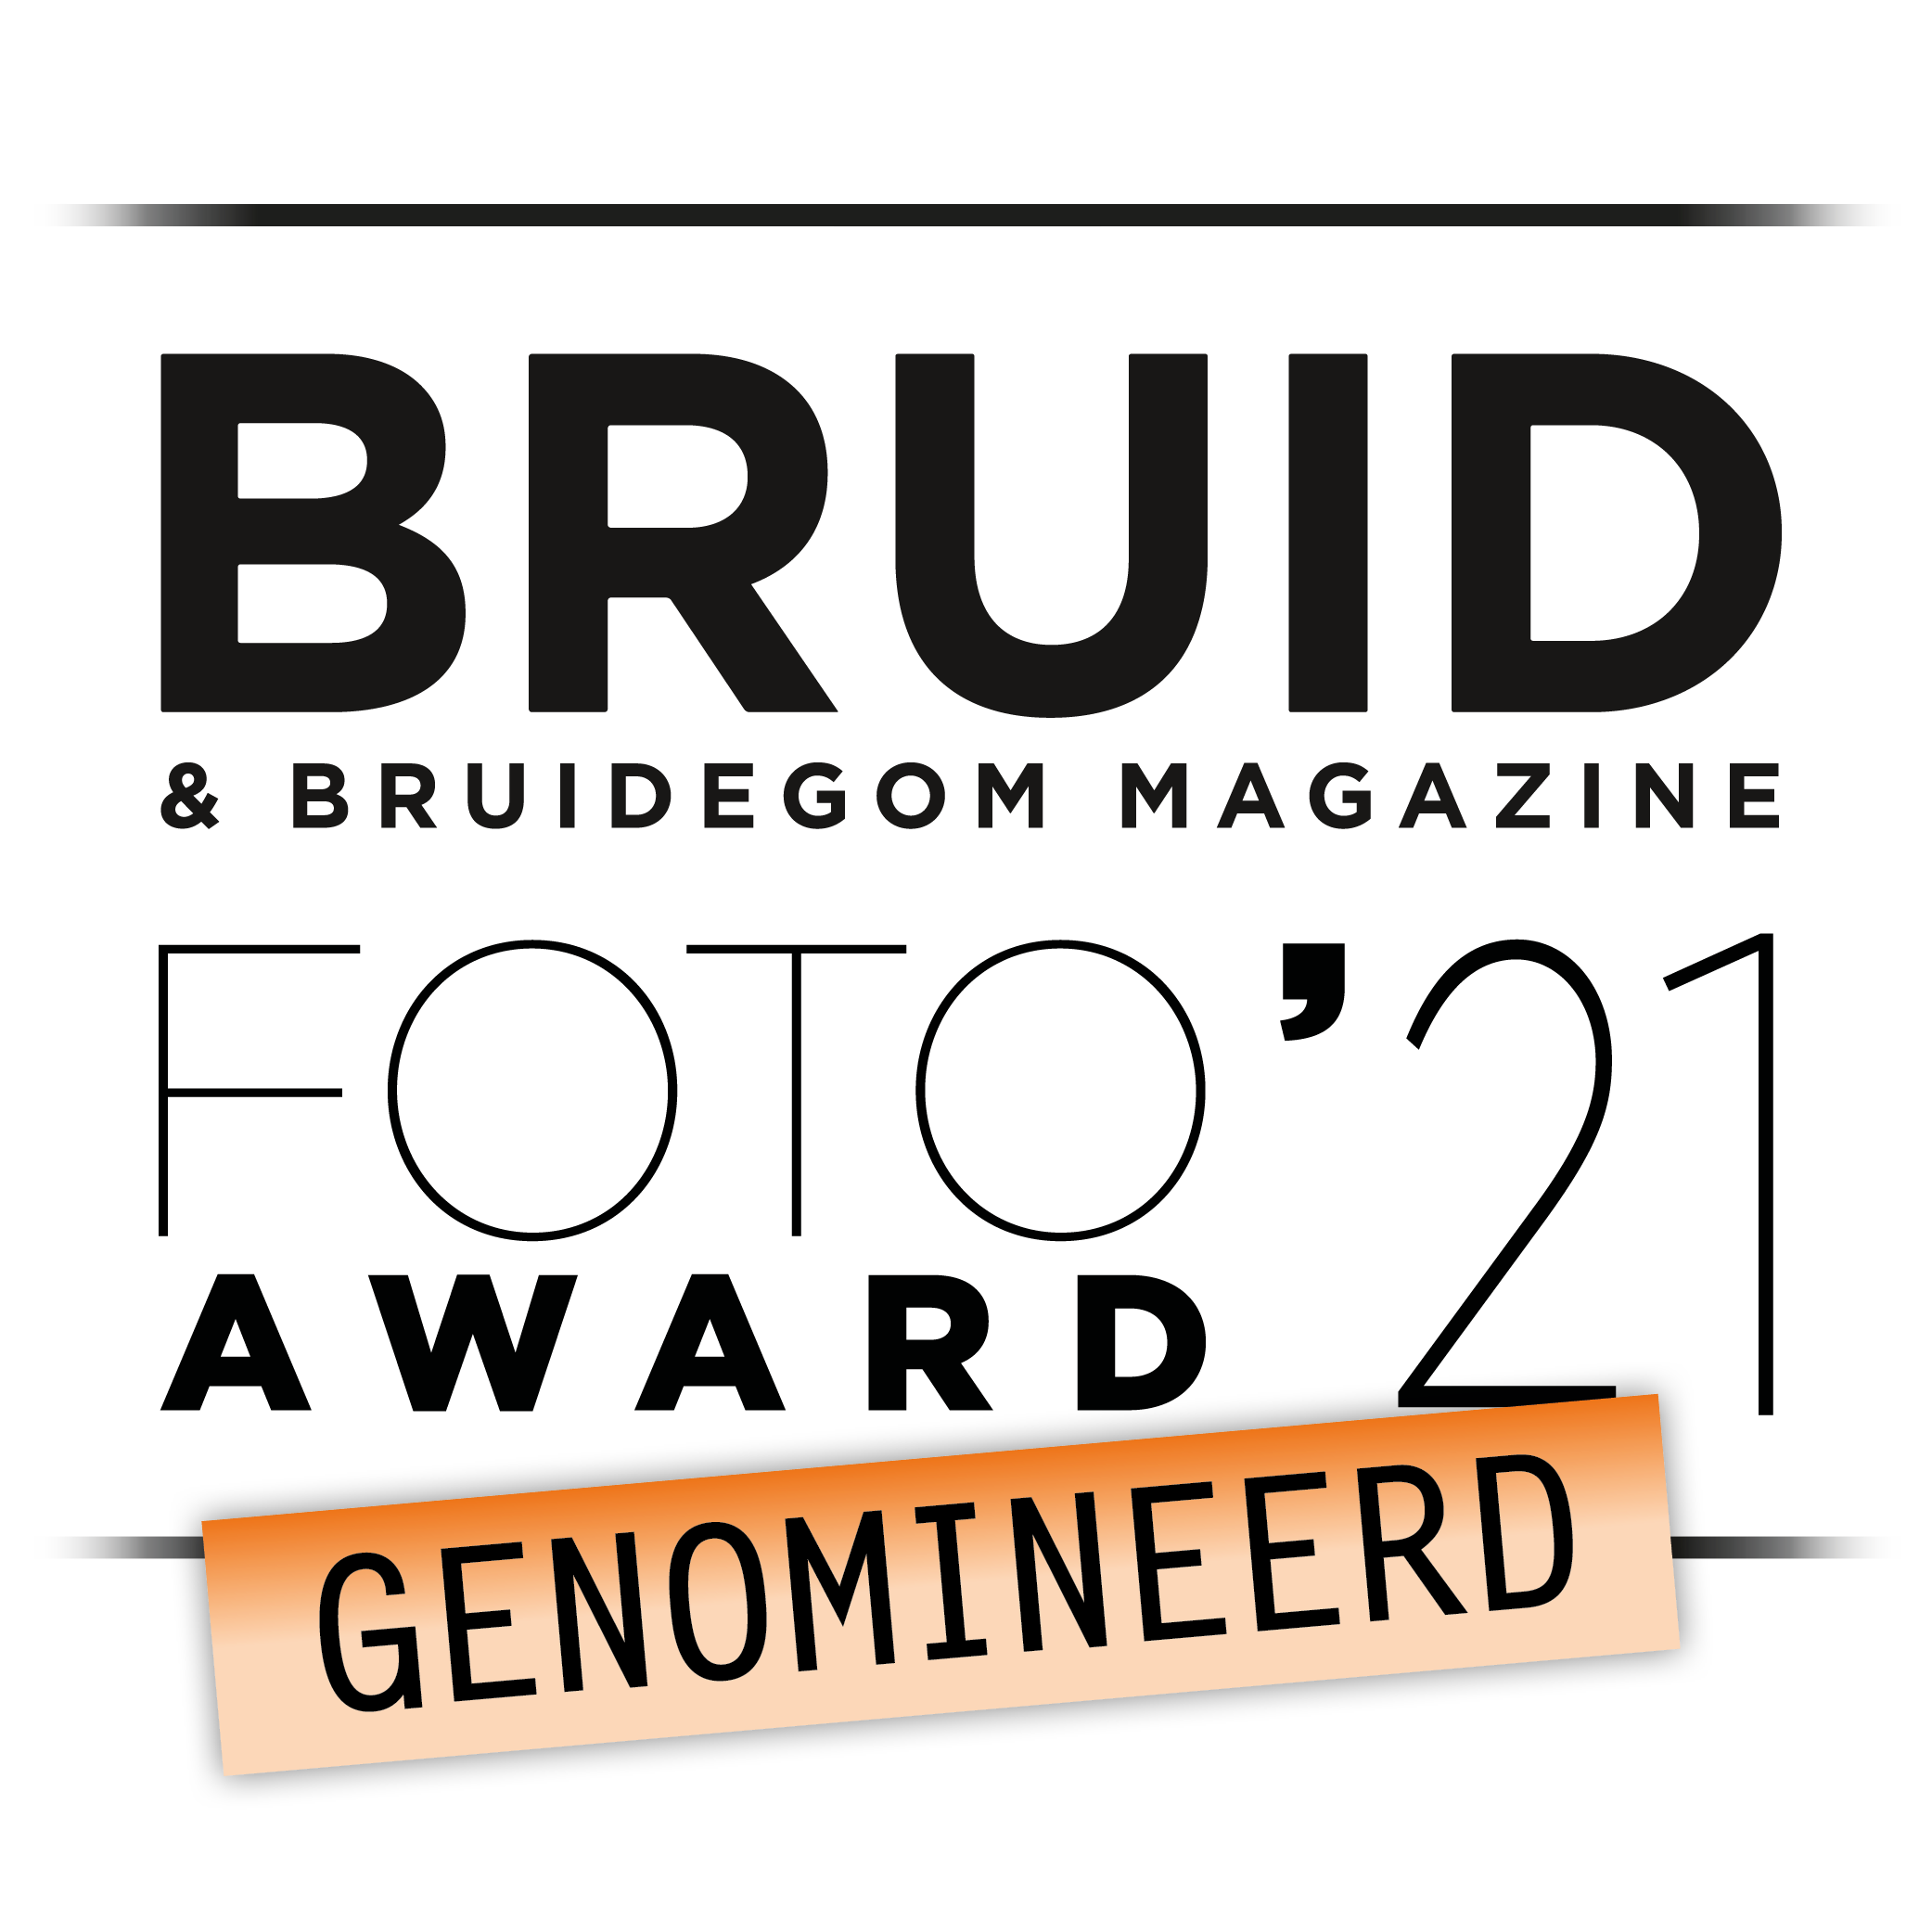 Bruid & Bruidegom Magazine